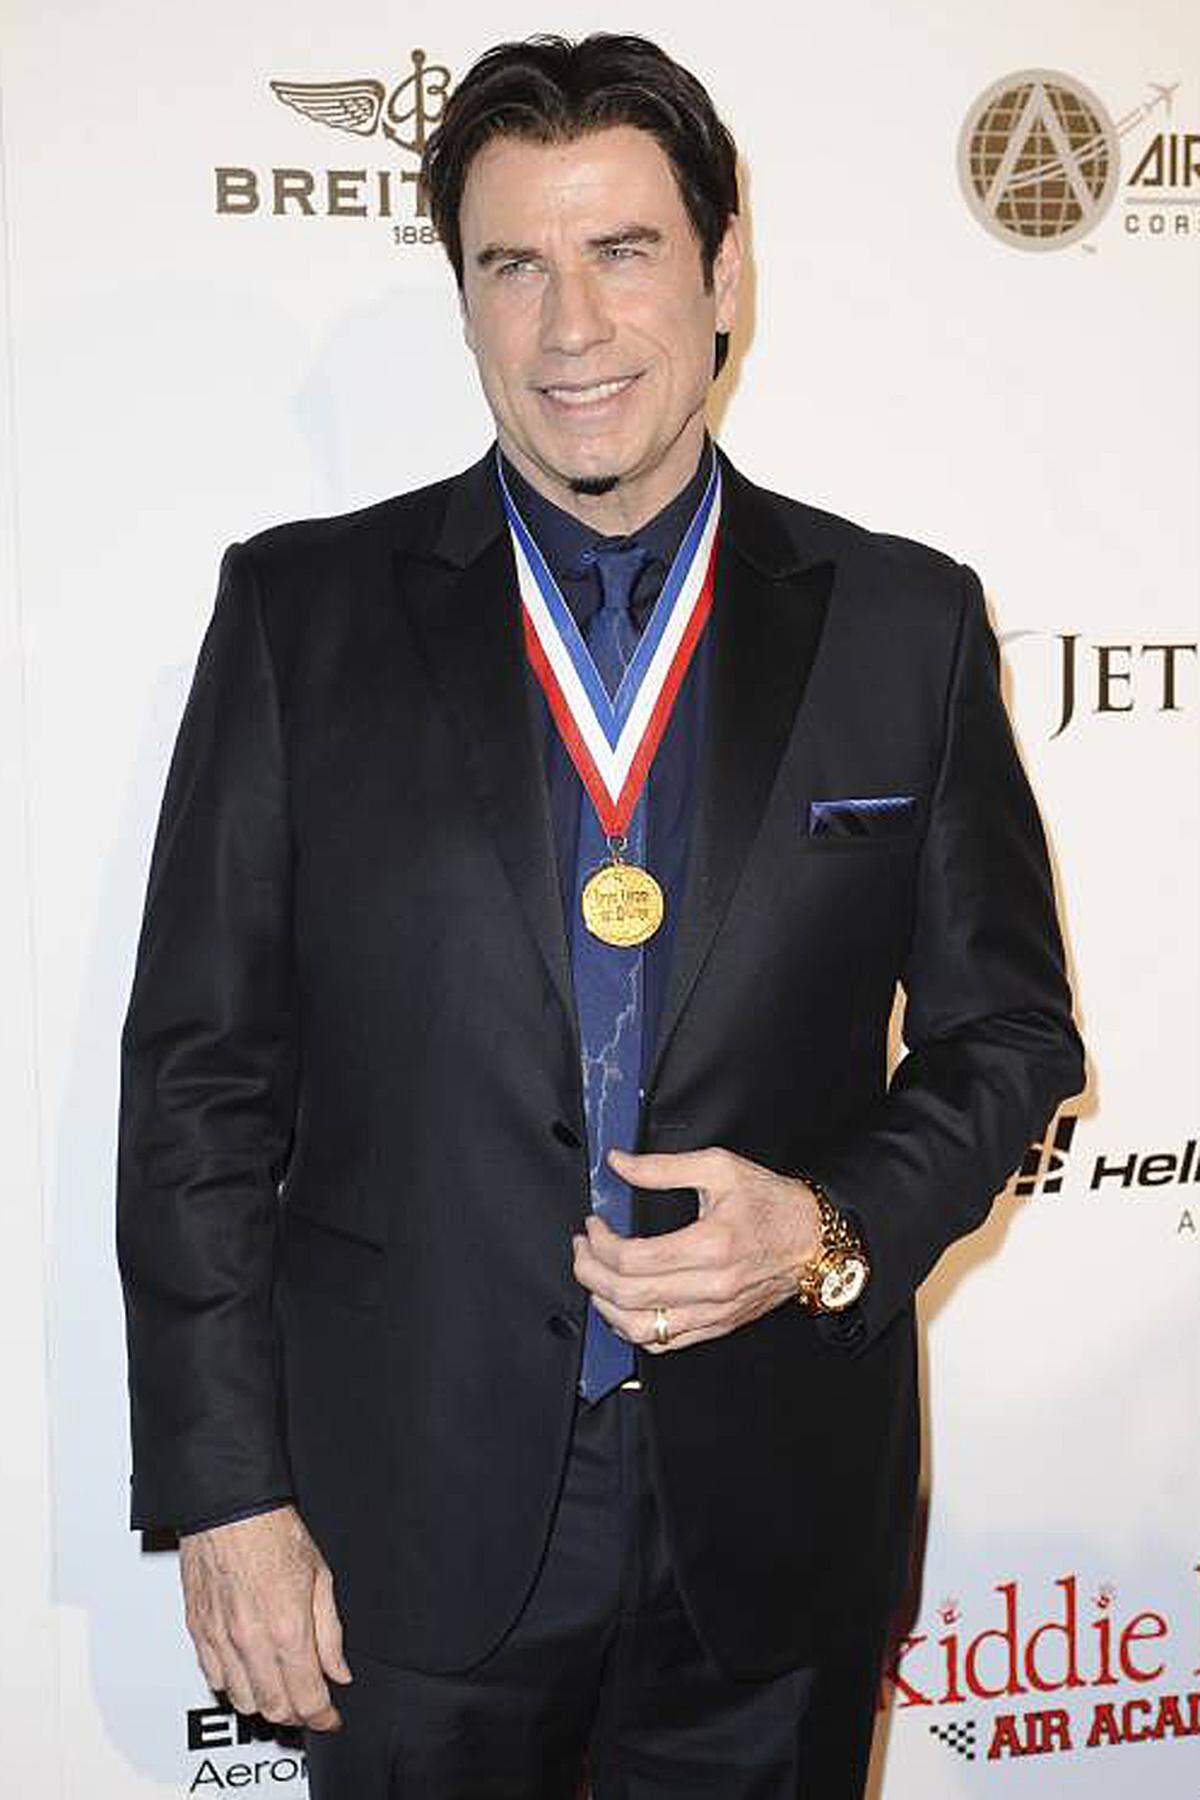 In den 70er Jahren sorgte sein Hüftschwung in "Saturday Night Fever" für Begeisterung, nach Rückschlägen feierte er Mitte der 90er mit dem Tarantino-Kultfilm "Pulp Fiction" ein Comeback. Die Rede ist von John Travolta. Der US-Mime feierte am 18. Februar seinen 60. Geburtstag. DiePresse.com blickt auf seine ereignisreiche Schauspielkarriere zurück: